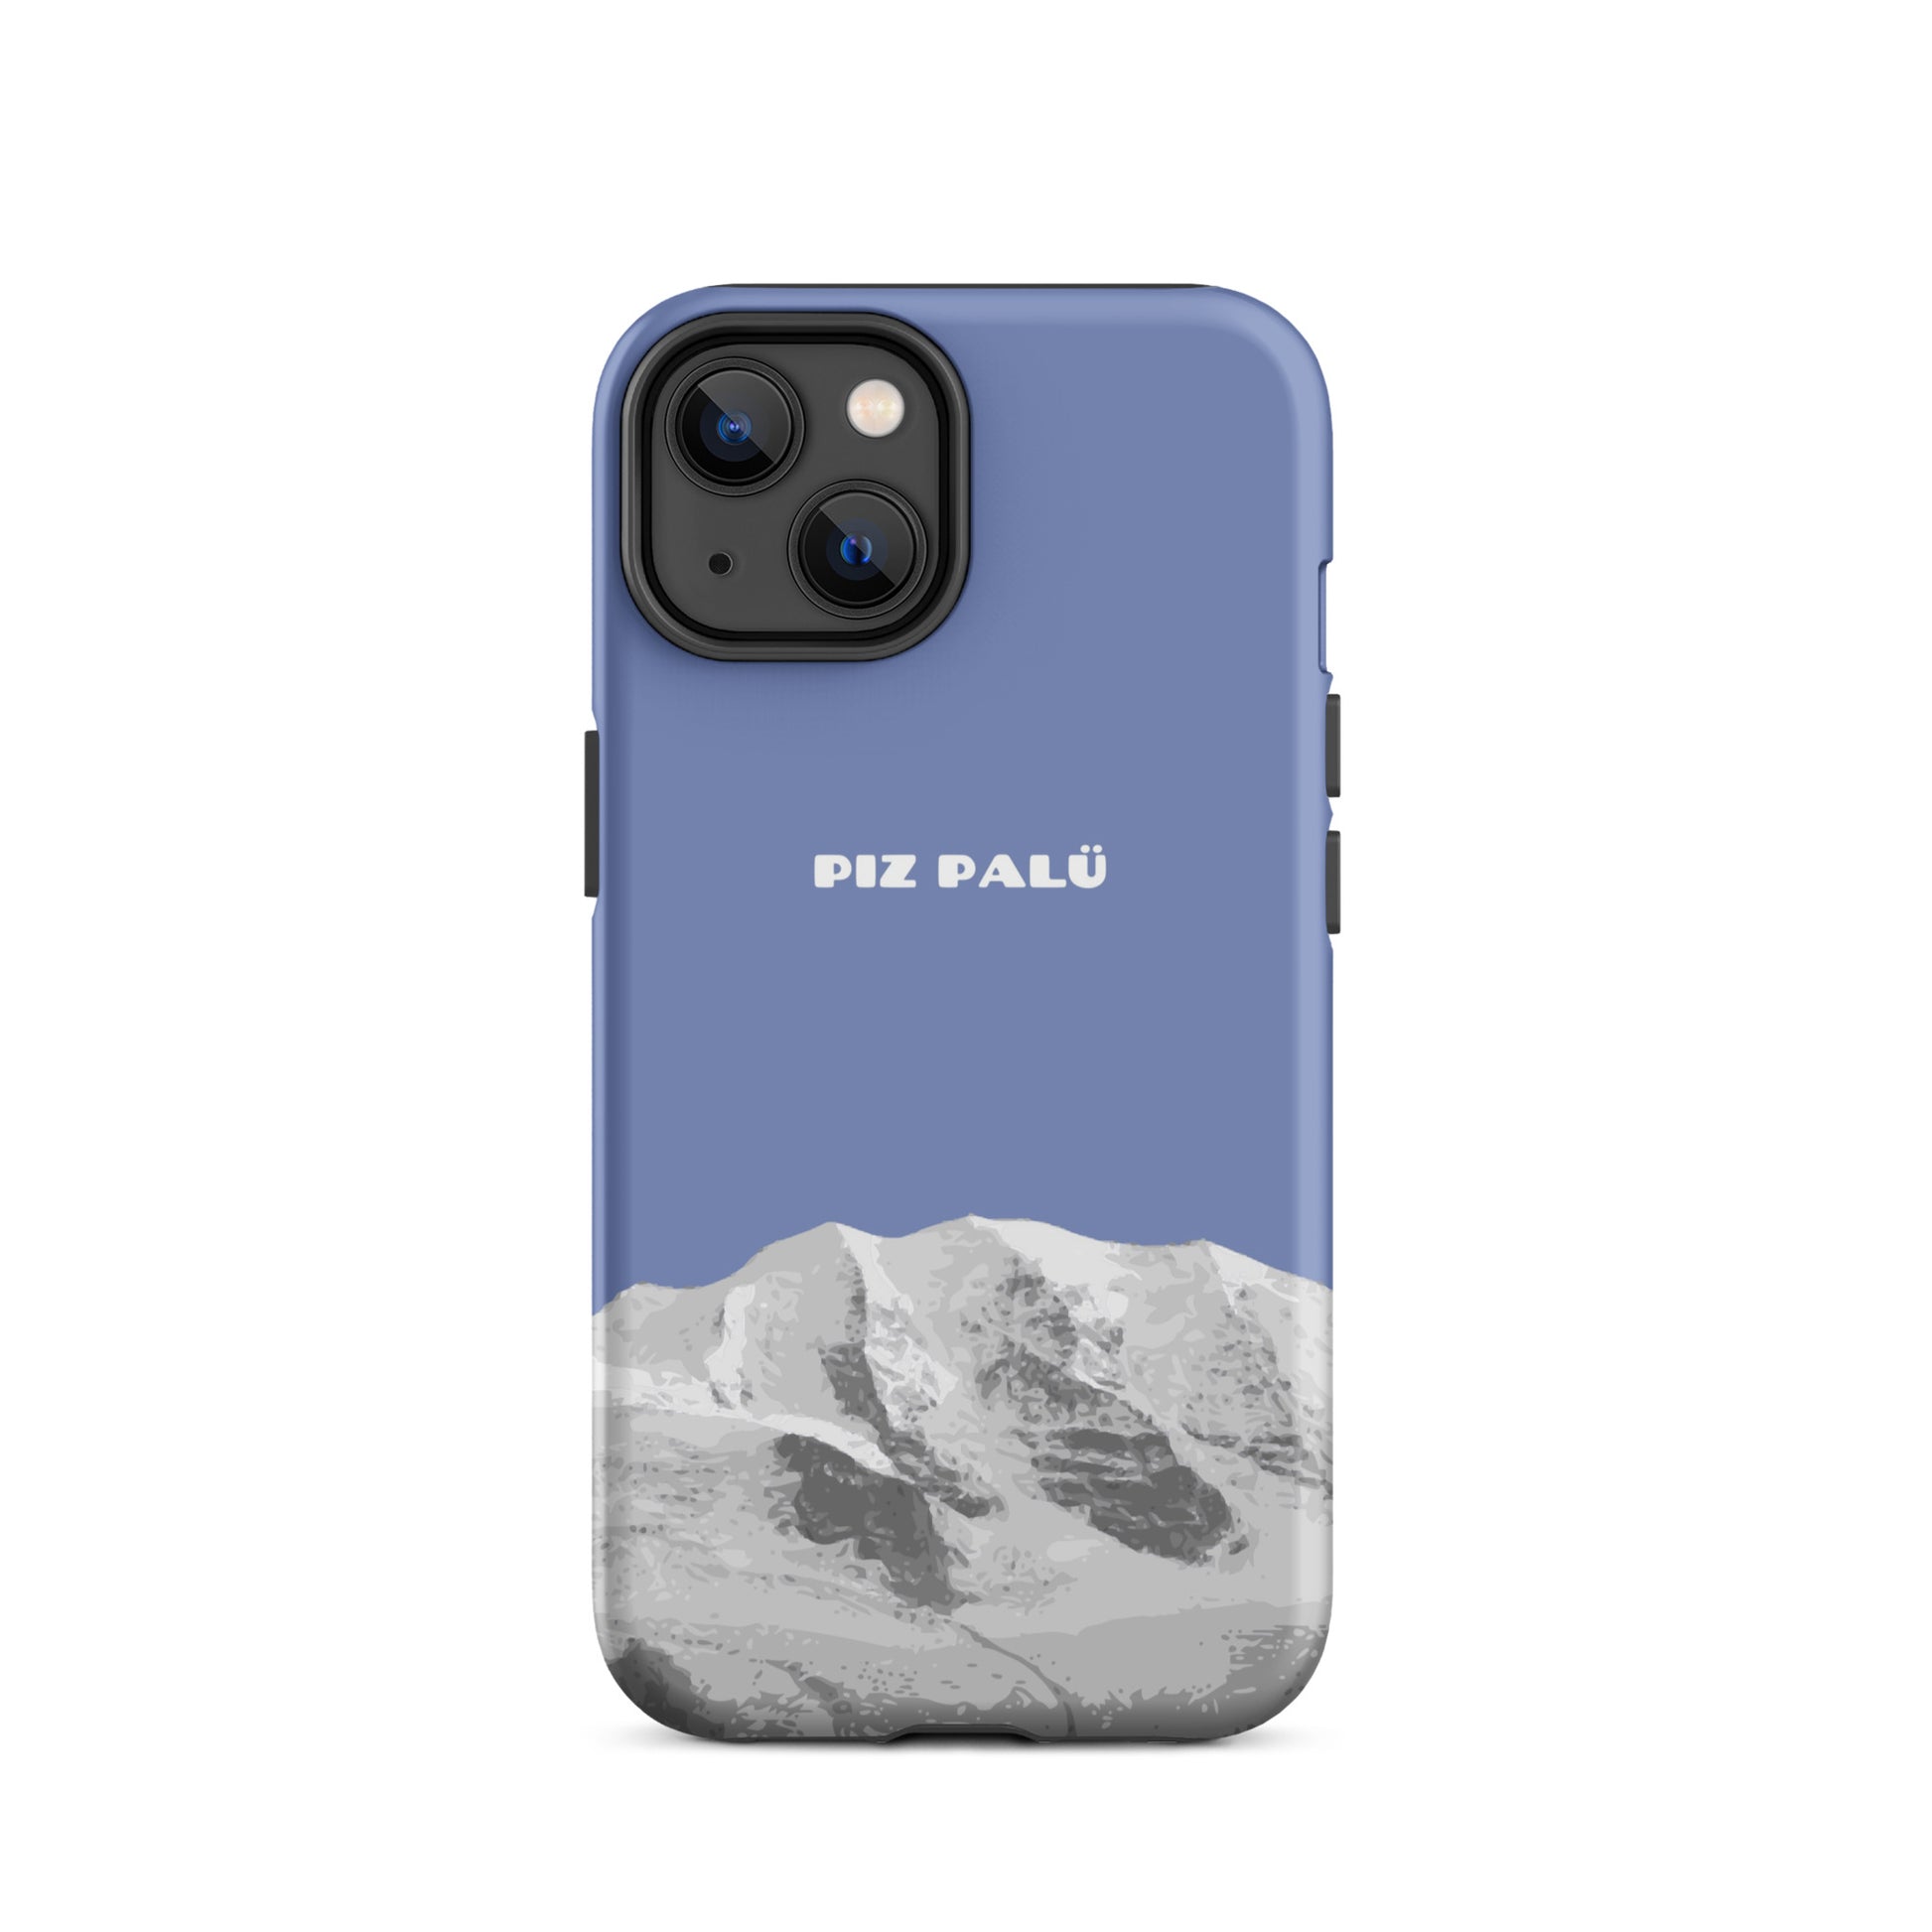 Hülle für das iPhone 14 von Apple in der Farbe Pastellblau, dass den Piz Palü in Graubünden zeigt.